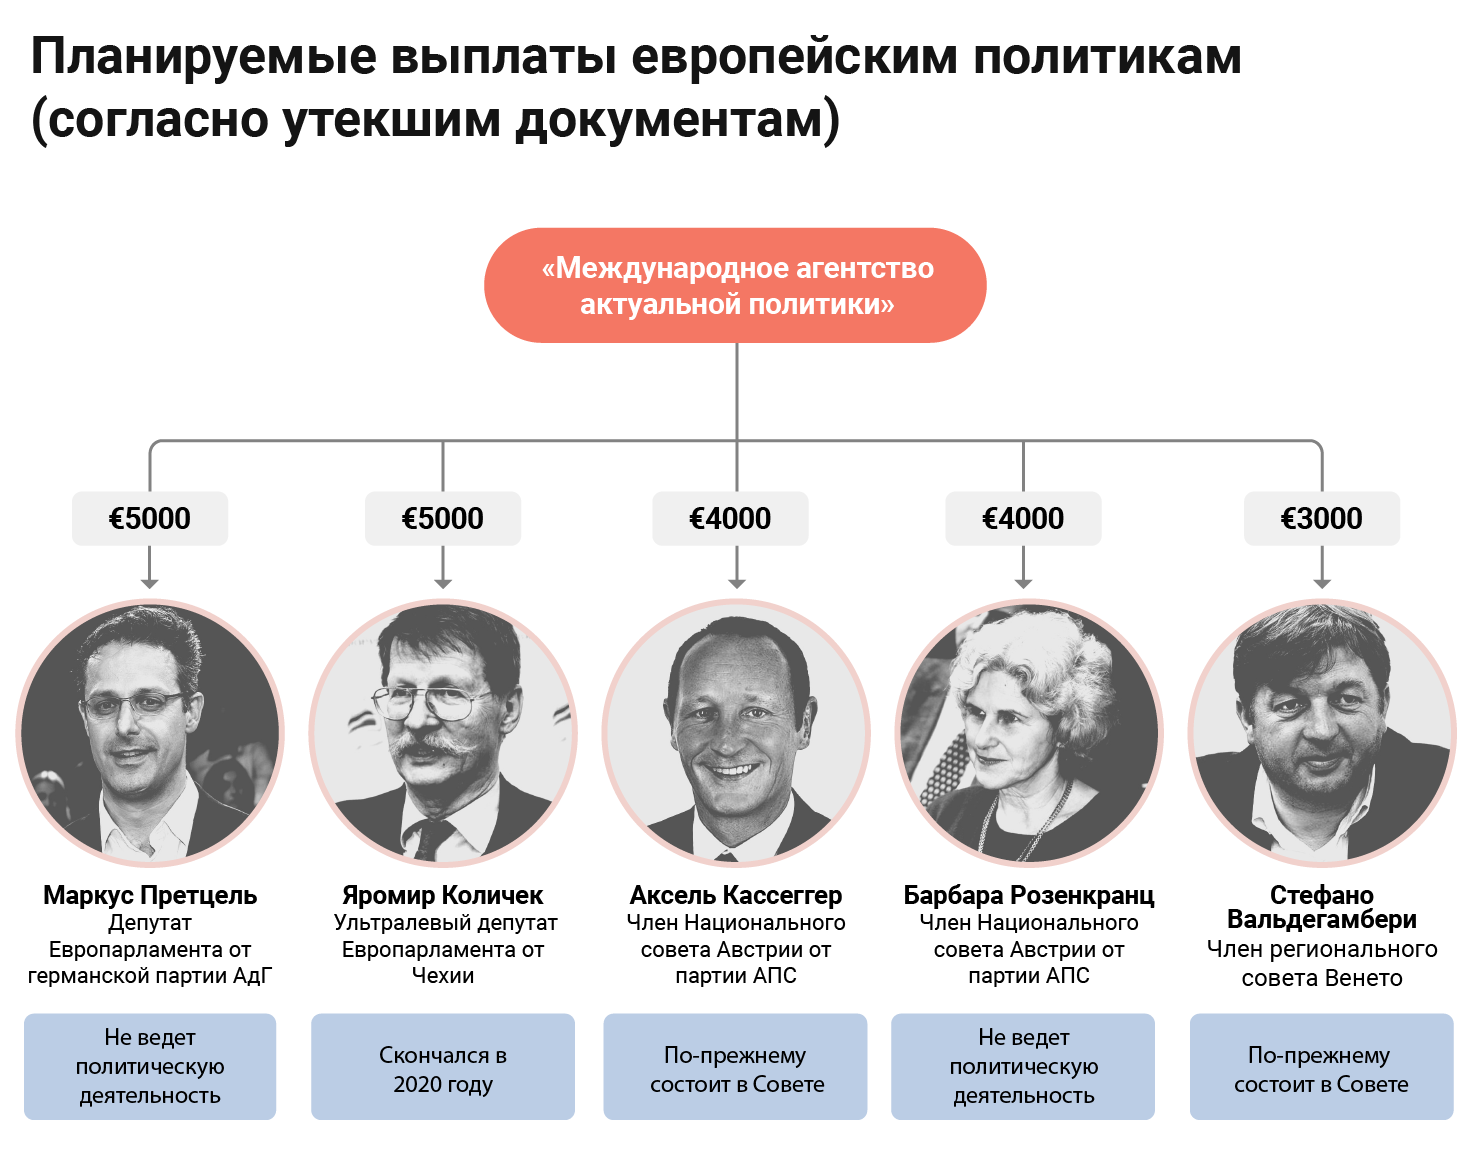 investigations/argonaut-money-graphic4-rus.png